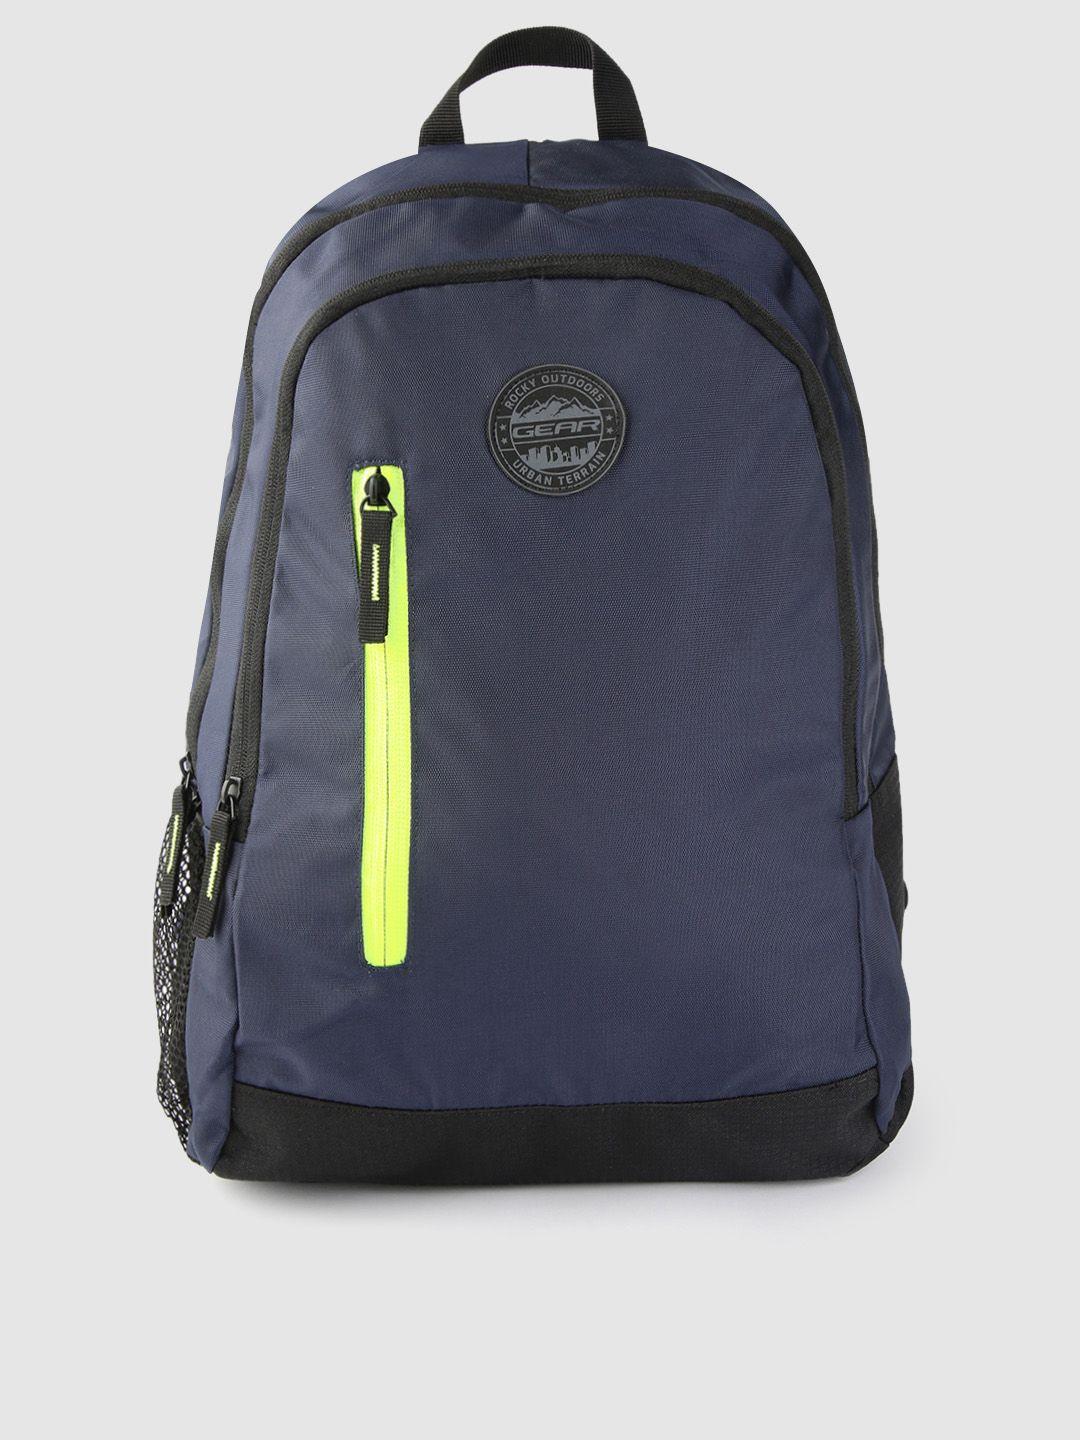 gear unisex navy & black eco 4 waterproof backpack